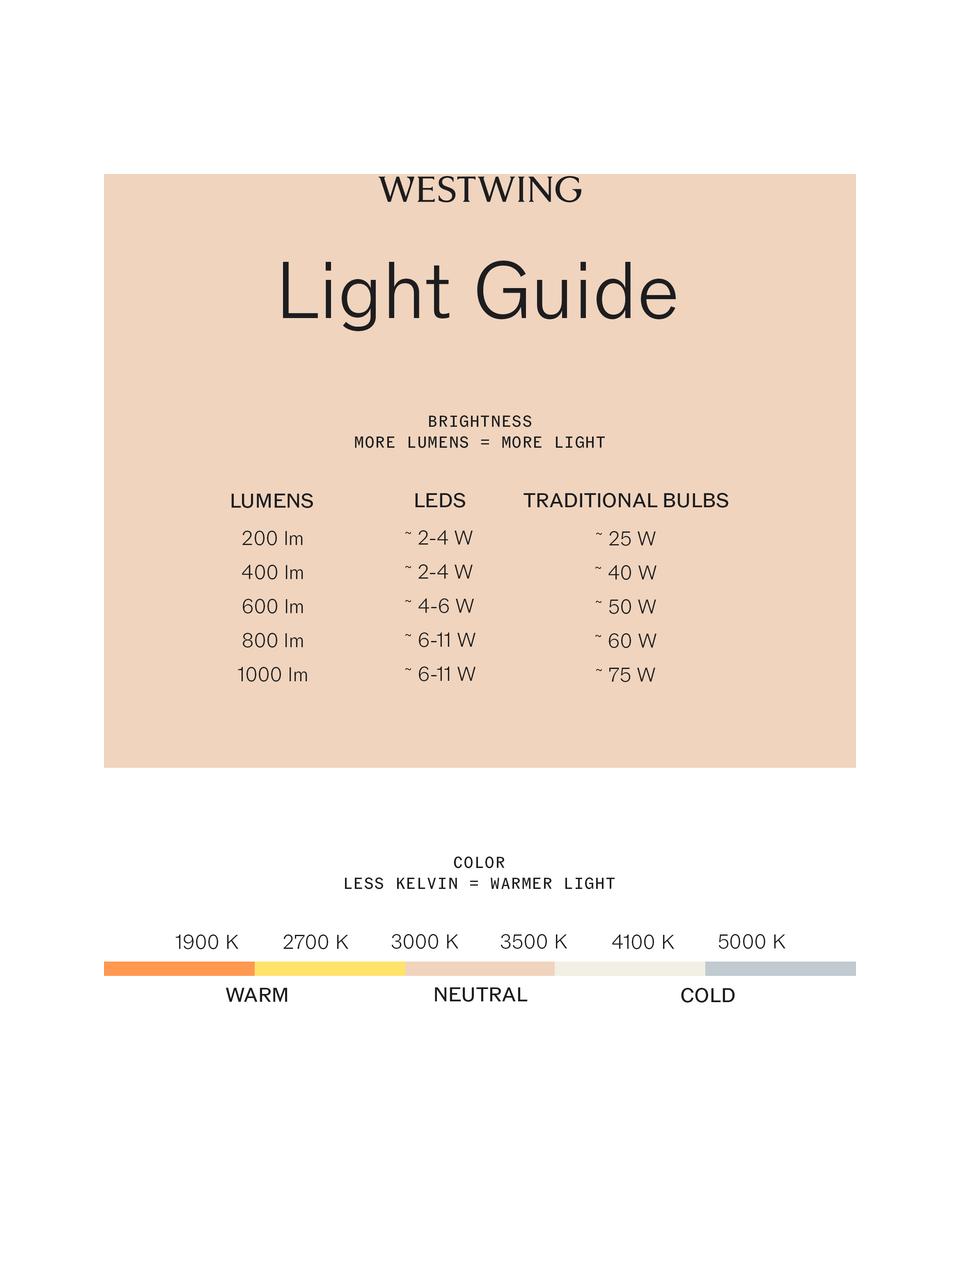 Lampe à poser LED mobile à intensité variable Olivia Pro, Blanc, Ø 11 x haut. 22 cm